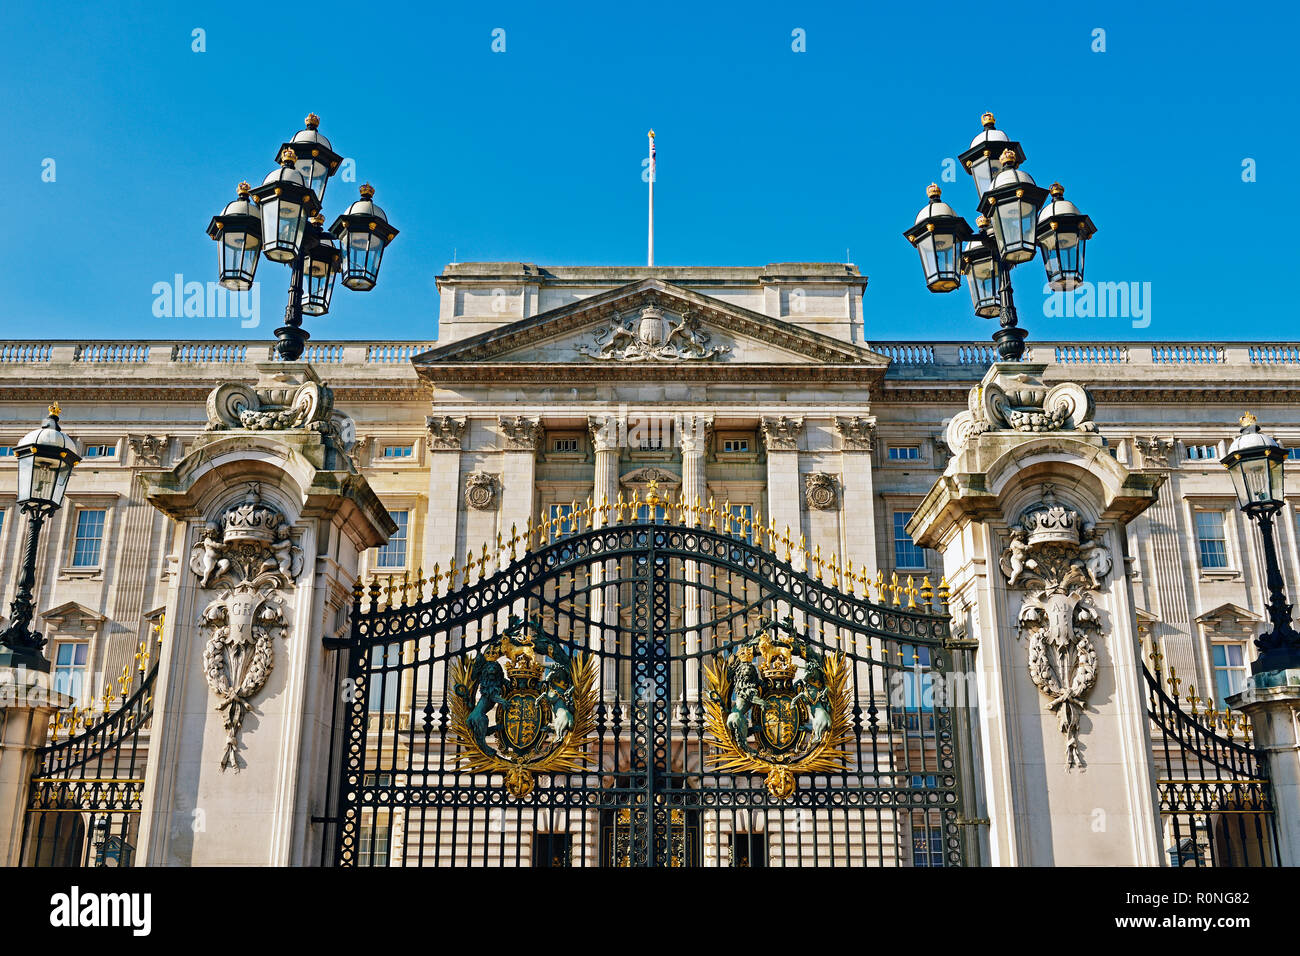 Le palais de Buckingham, Londres, Angleterre, Royaume-Uni Banque D'Images